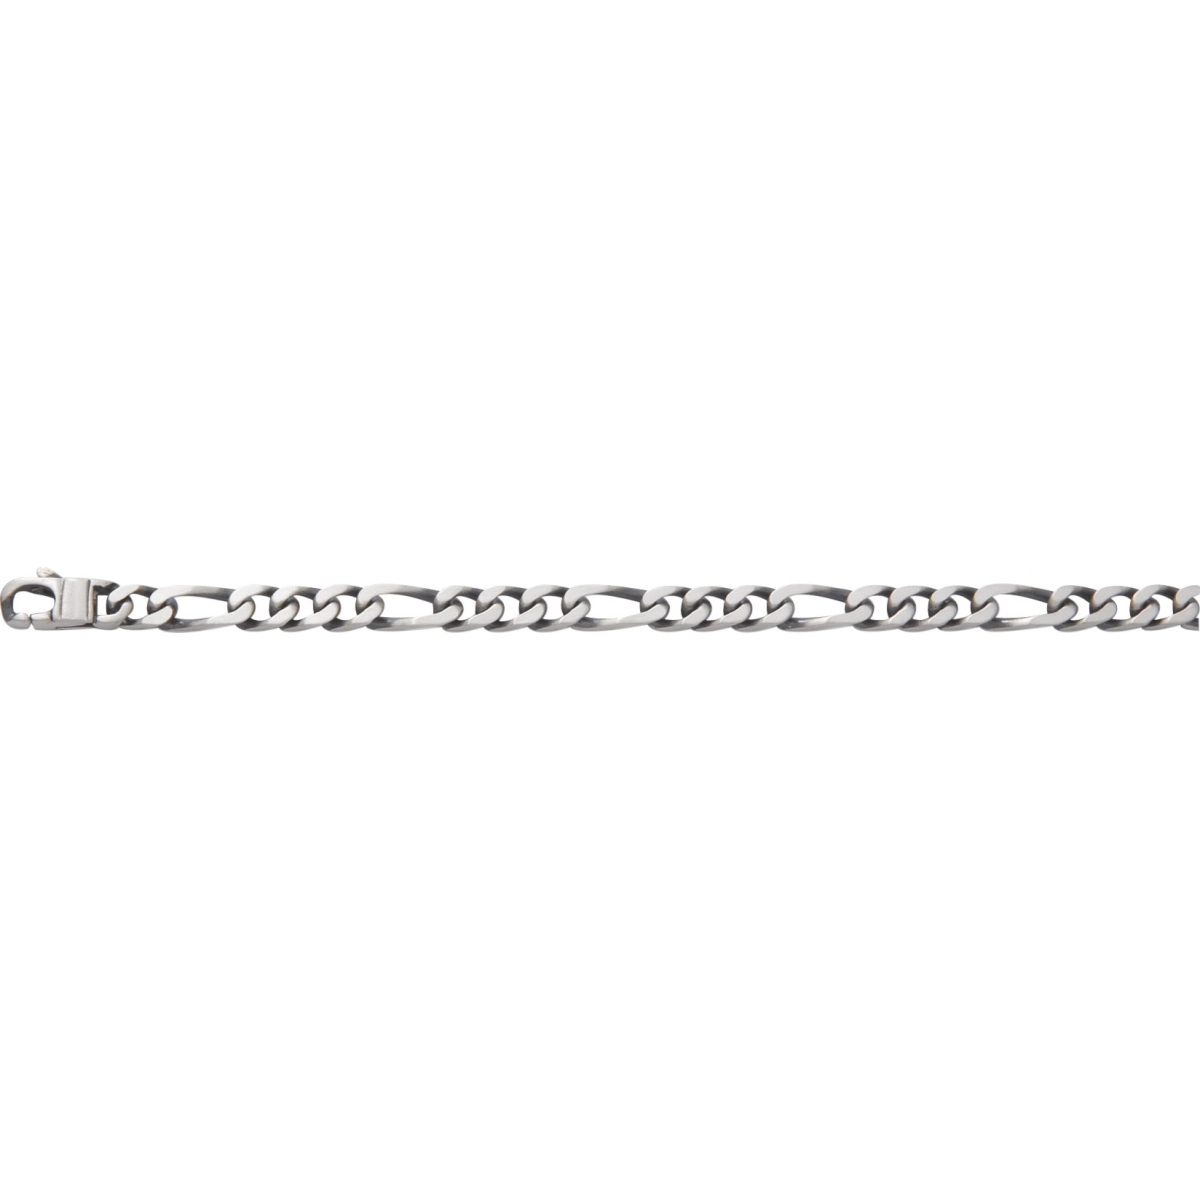 Bracelet 5mm 925 Silver - Size: 19  Lua Blanca  201485B.1.19